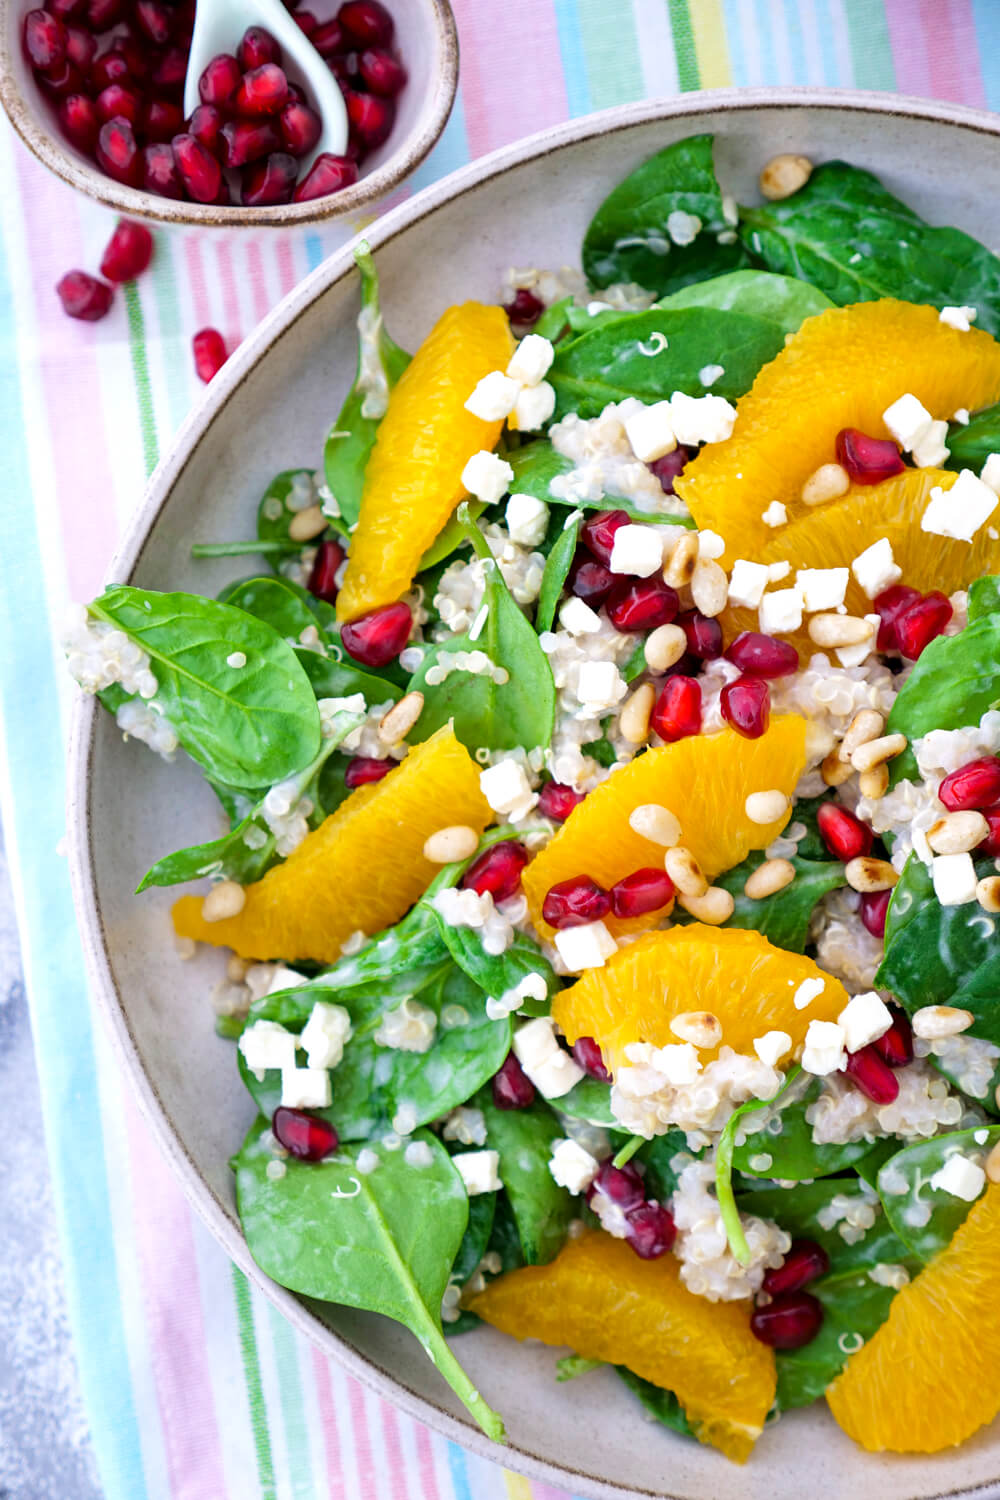 Super gesunder Power-Salat mit Quinoa, Orangen, Babyspinat, Granatapfelkernen, Feta und einem Orangendressing